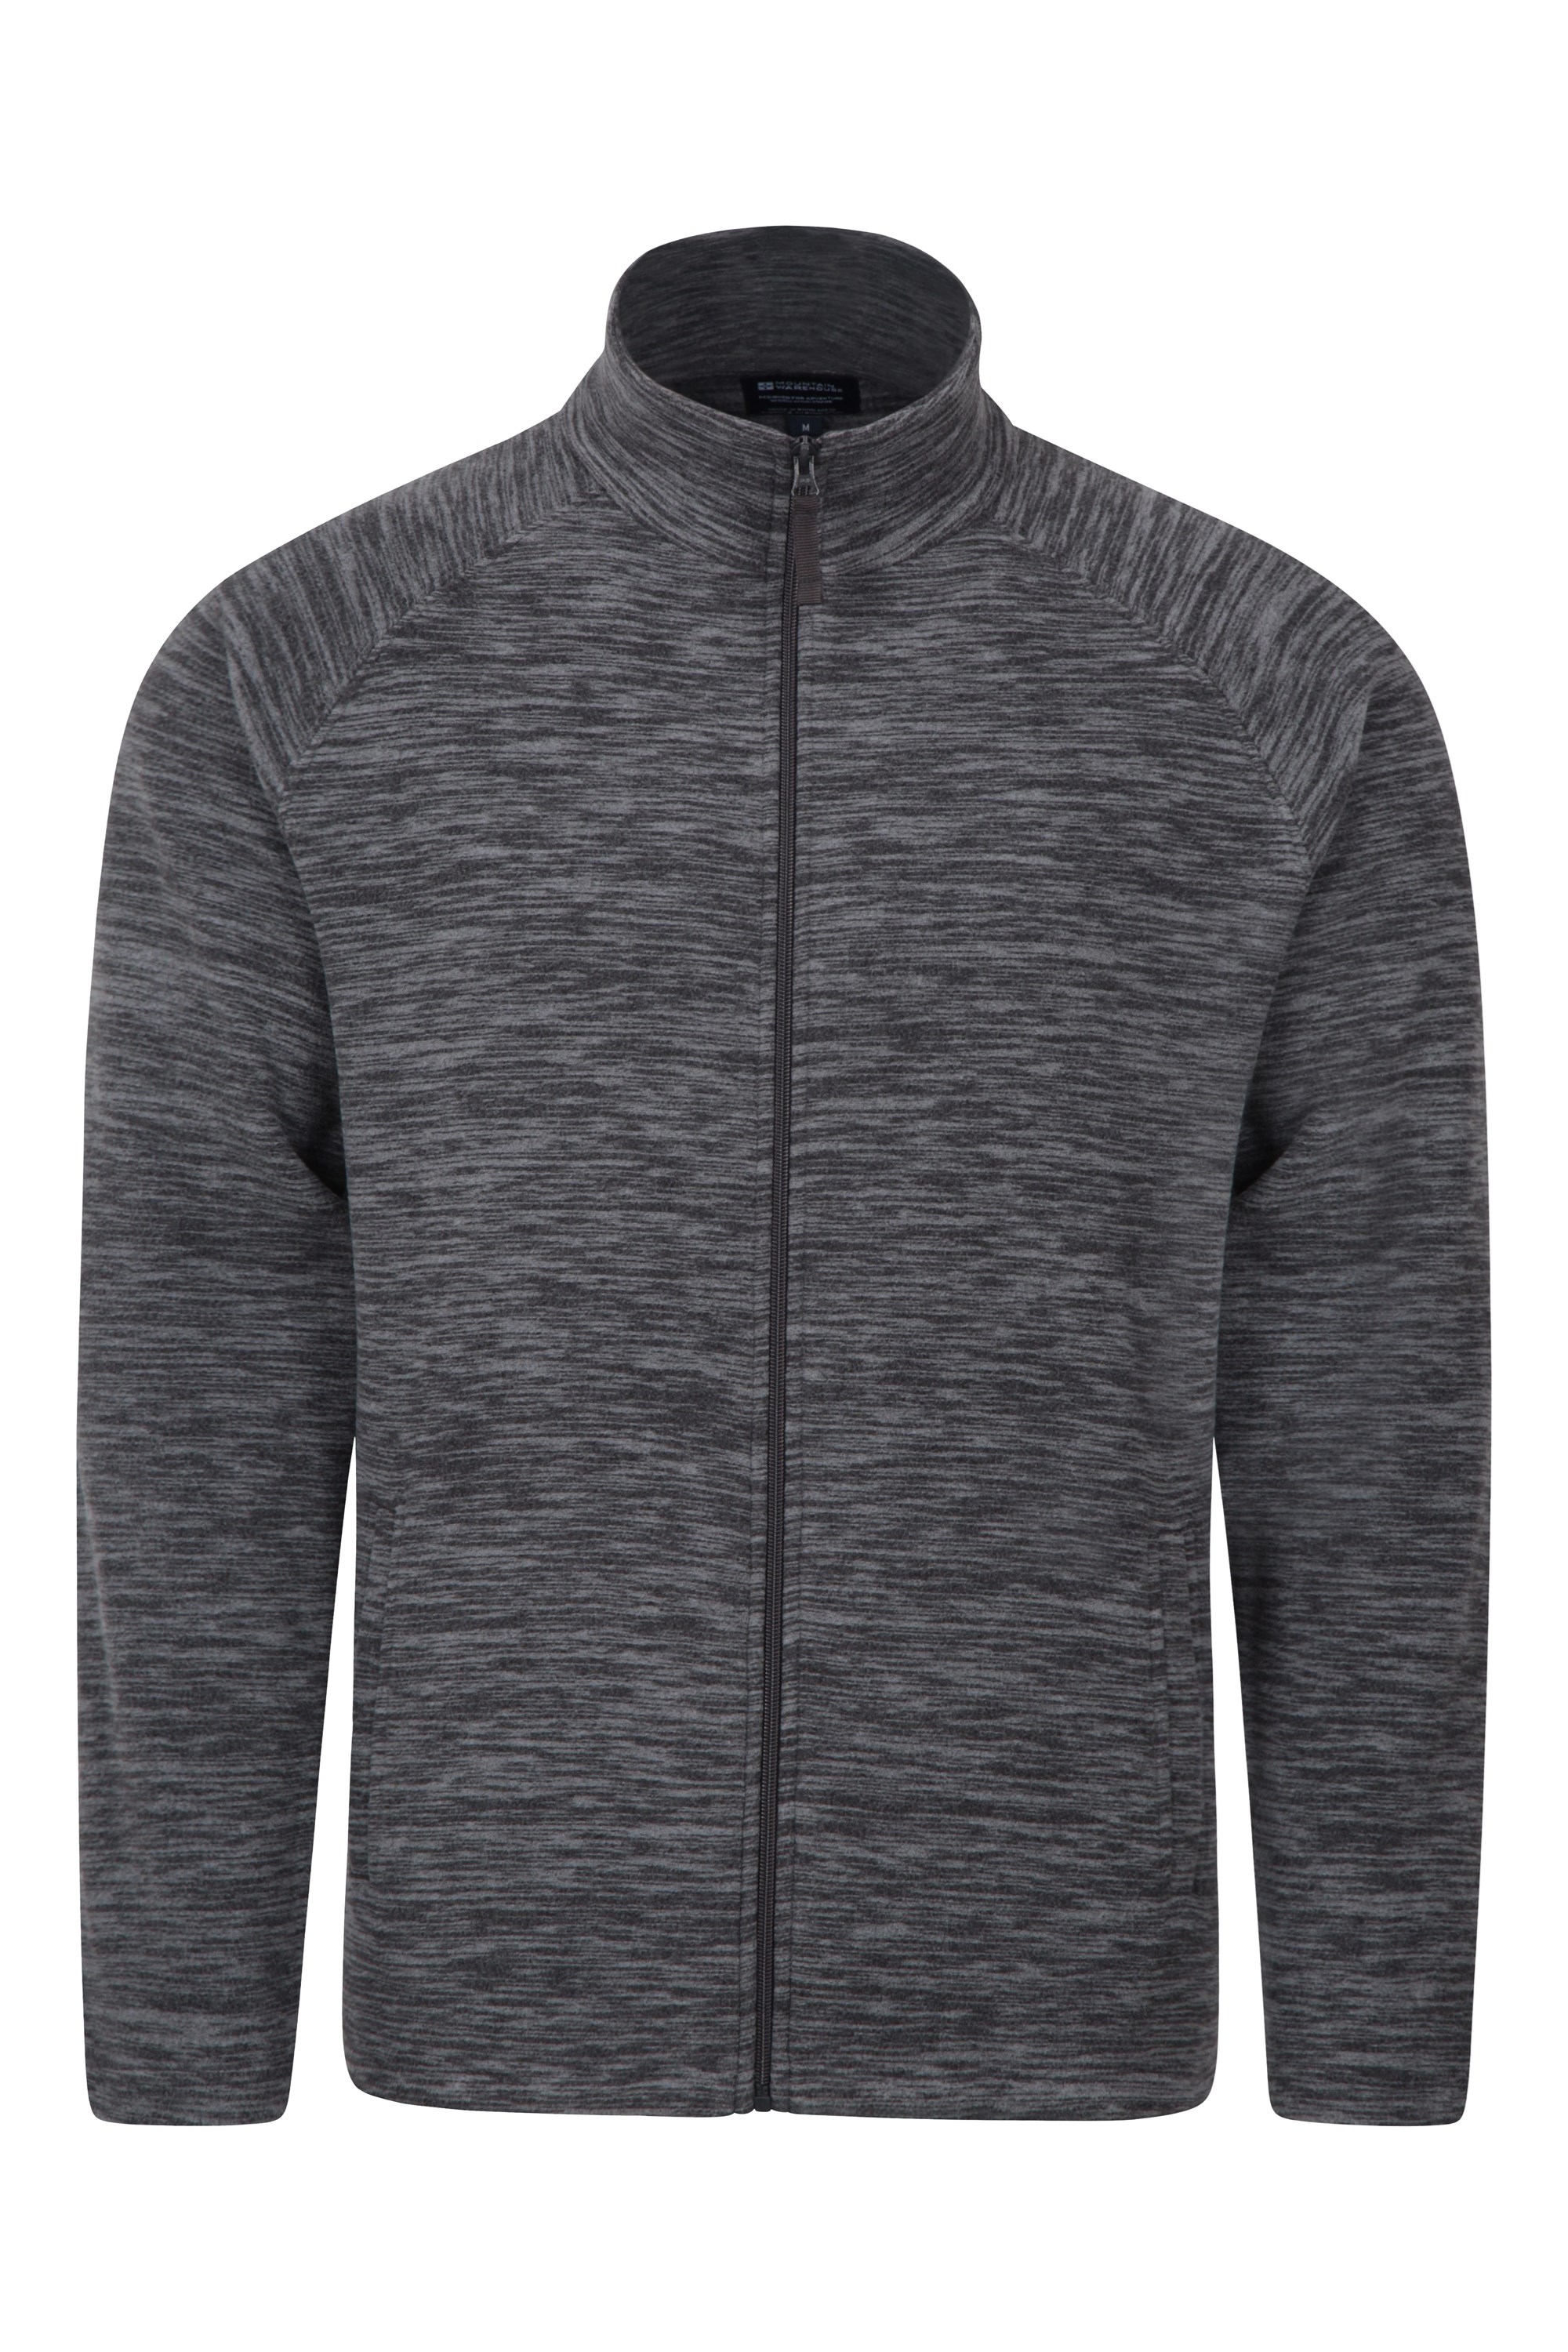 Snowdon Ii Mens Full-zip Fleece Jacket - Grey